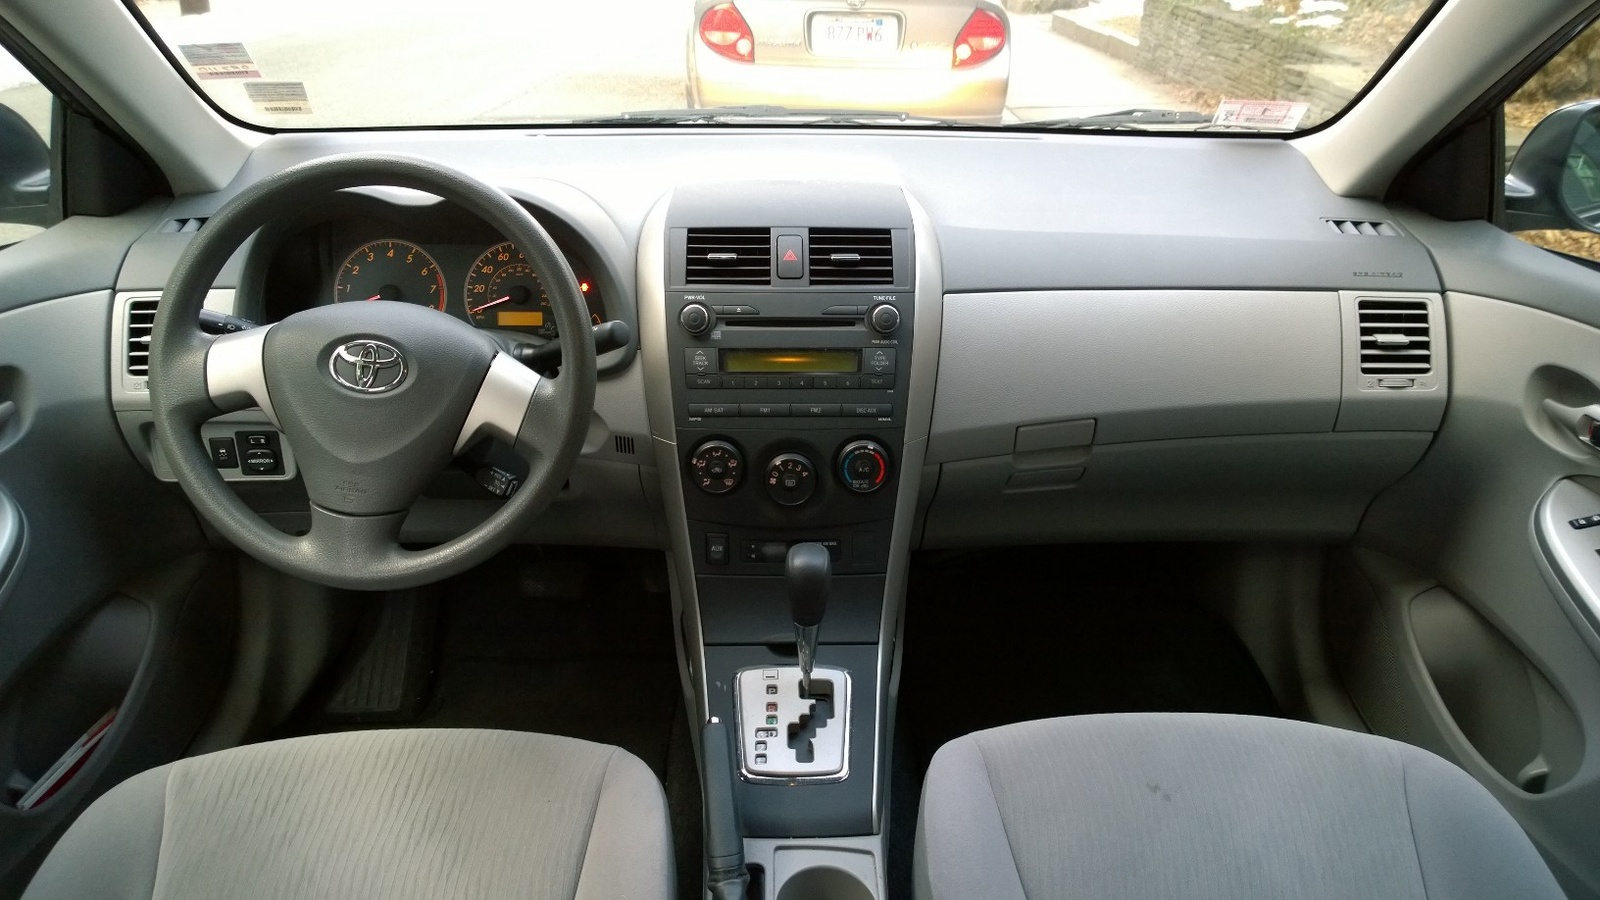 2010 Toyota corolla interior accessories